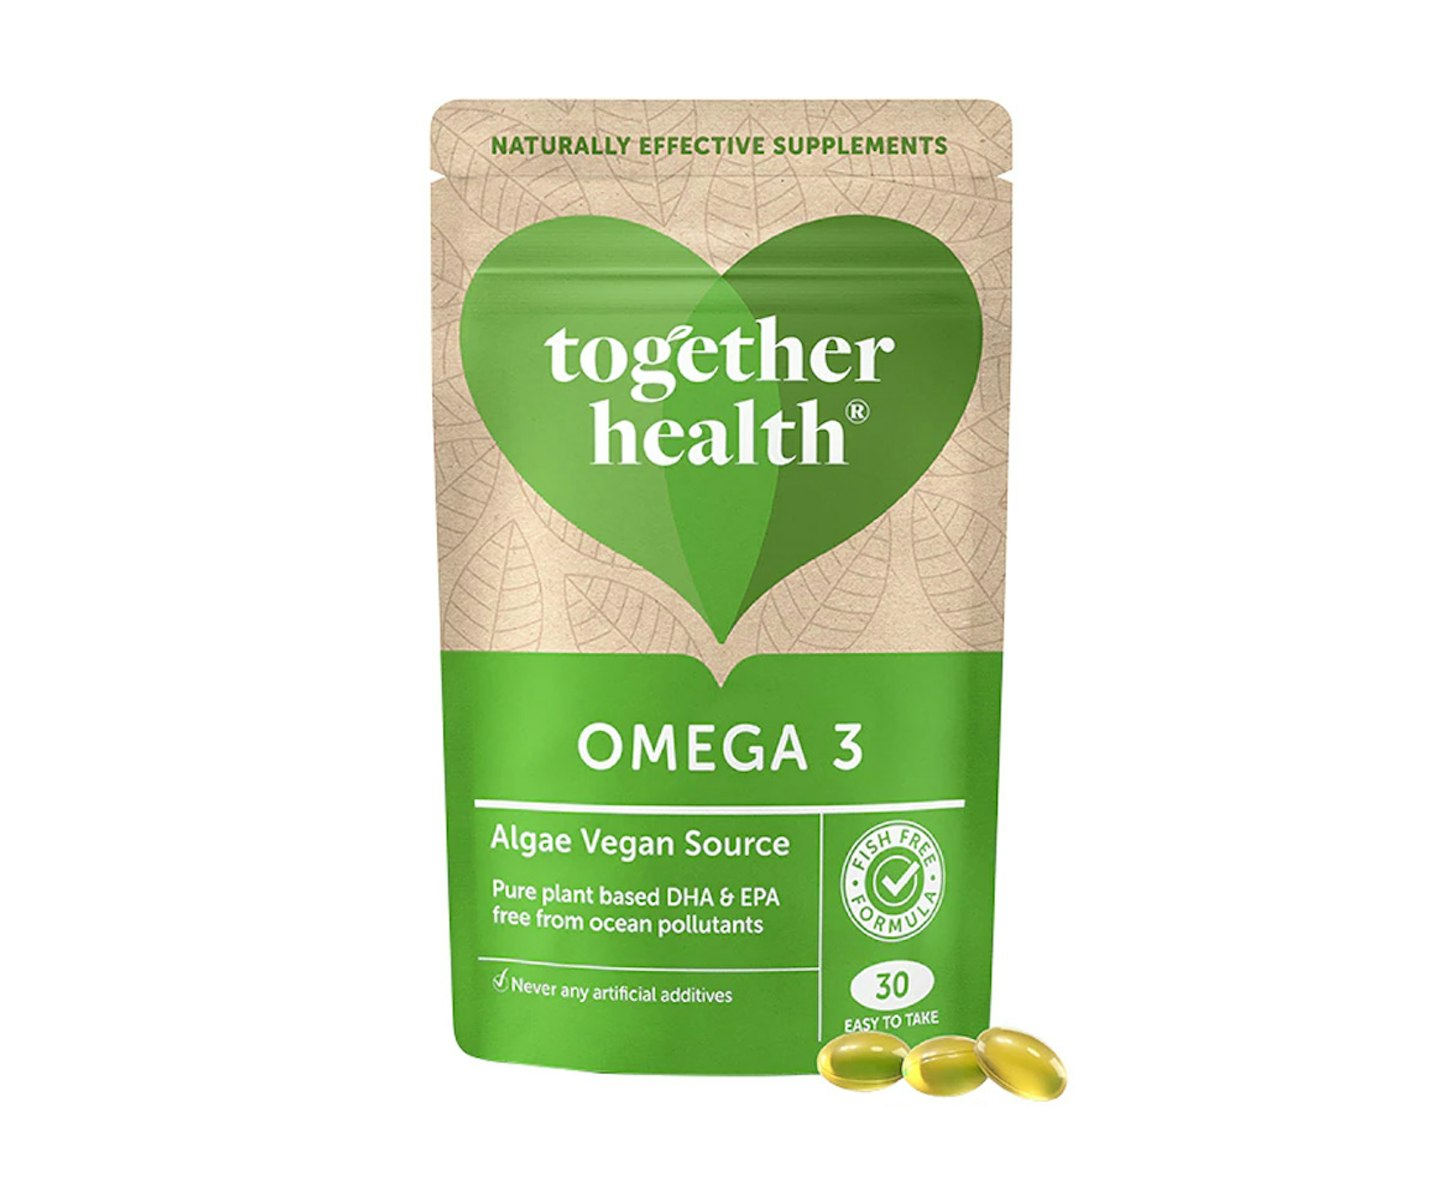 Omega 3 Together Health